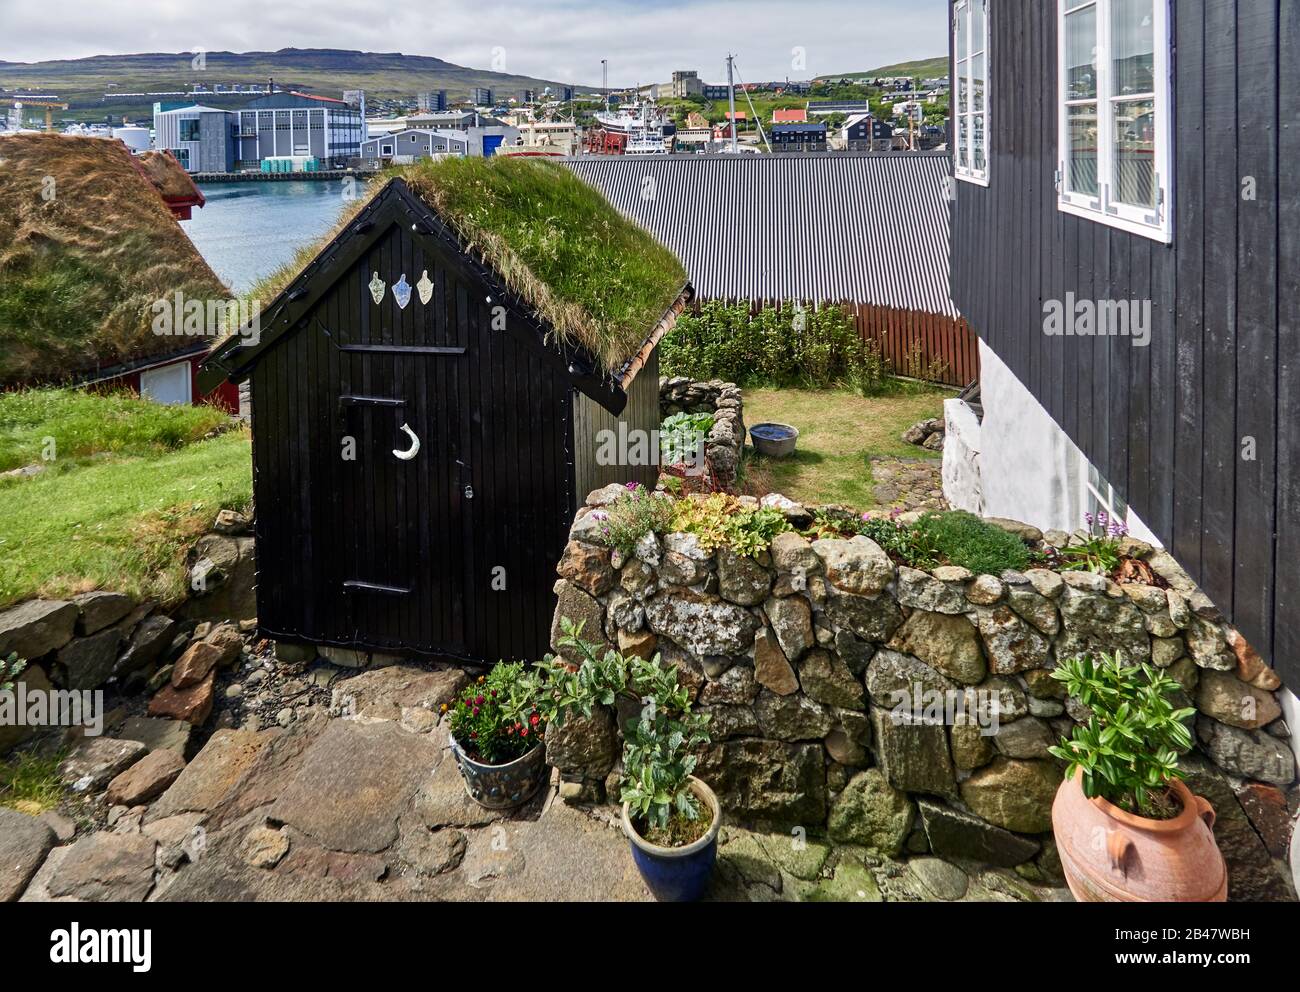 Dänemark, Halbinsel Tinganes, Torshavn, Streymoy, Färöer. Tinganes ist der historische Ort der färöischen landsstýri (Regierung) und ein zentraler Teil von Tórshavn. Der Name Tinganes bedeutet im färöischen "landtagspunkt" oder "landtagspunkt". Viele der Holzhäuser auf Tinganes wurden im 16. Und 17. Jahrhundert erbaut und verfügen über ein Rasendach, das auf den Färöern sehr verbreitet ist. Stockfoto